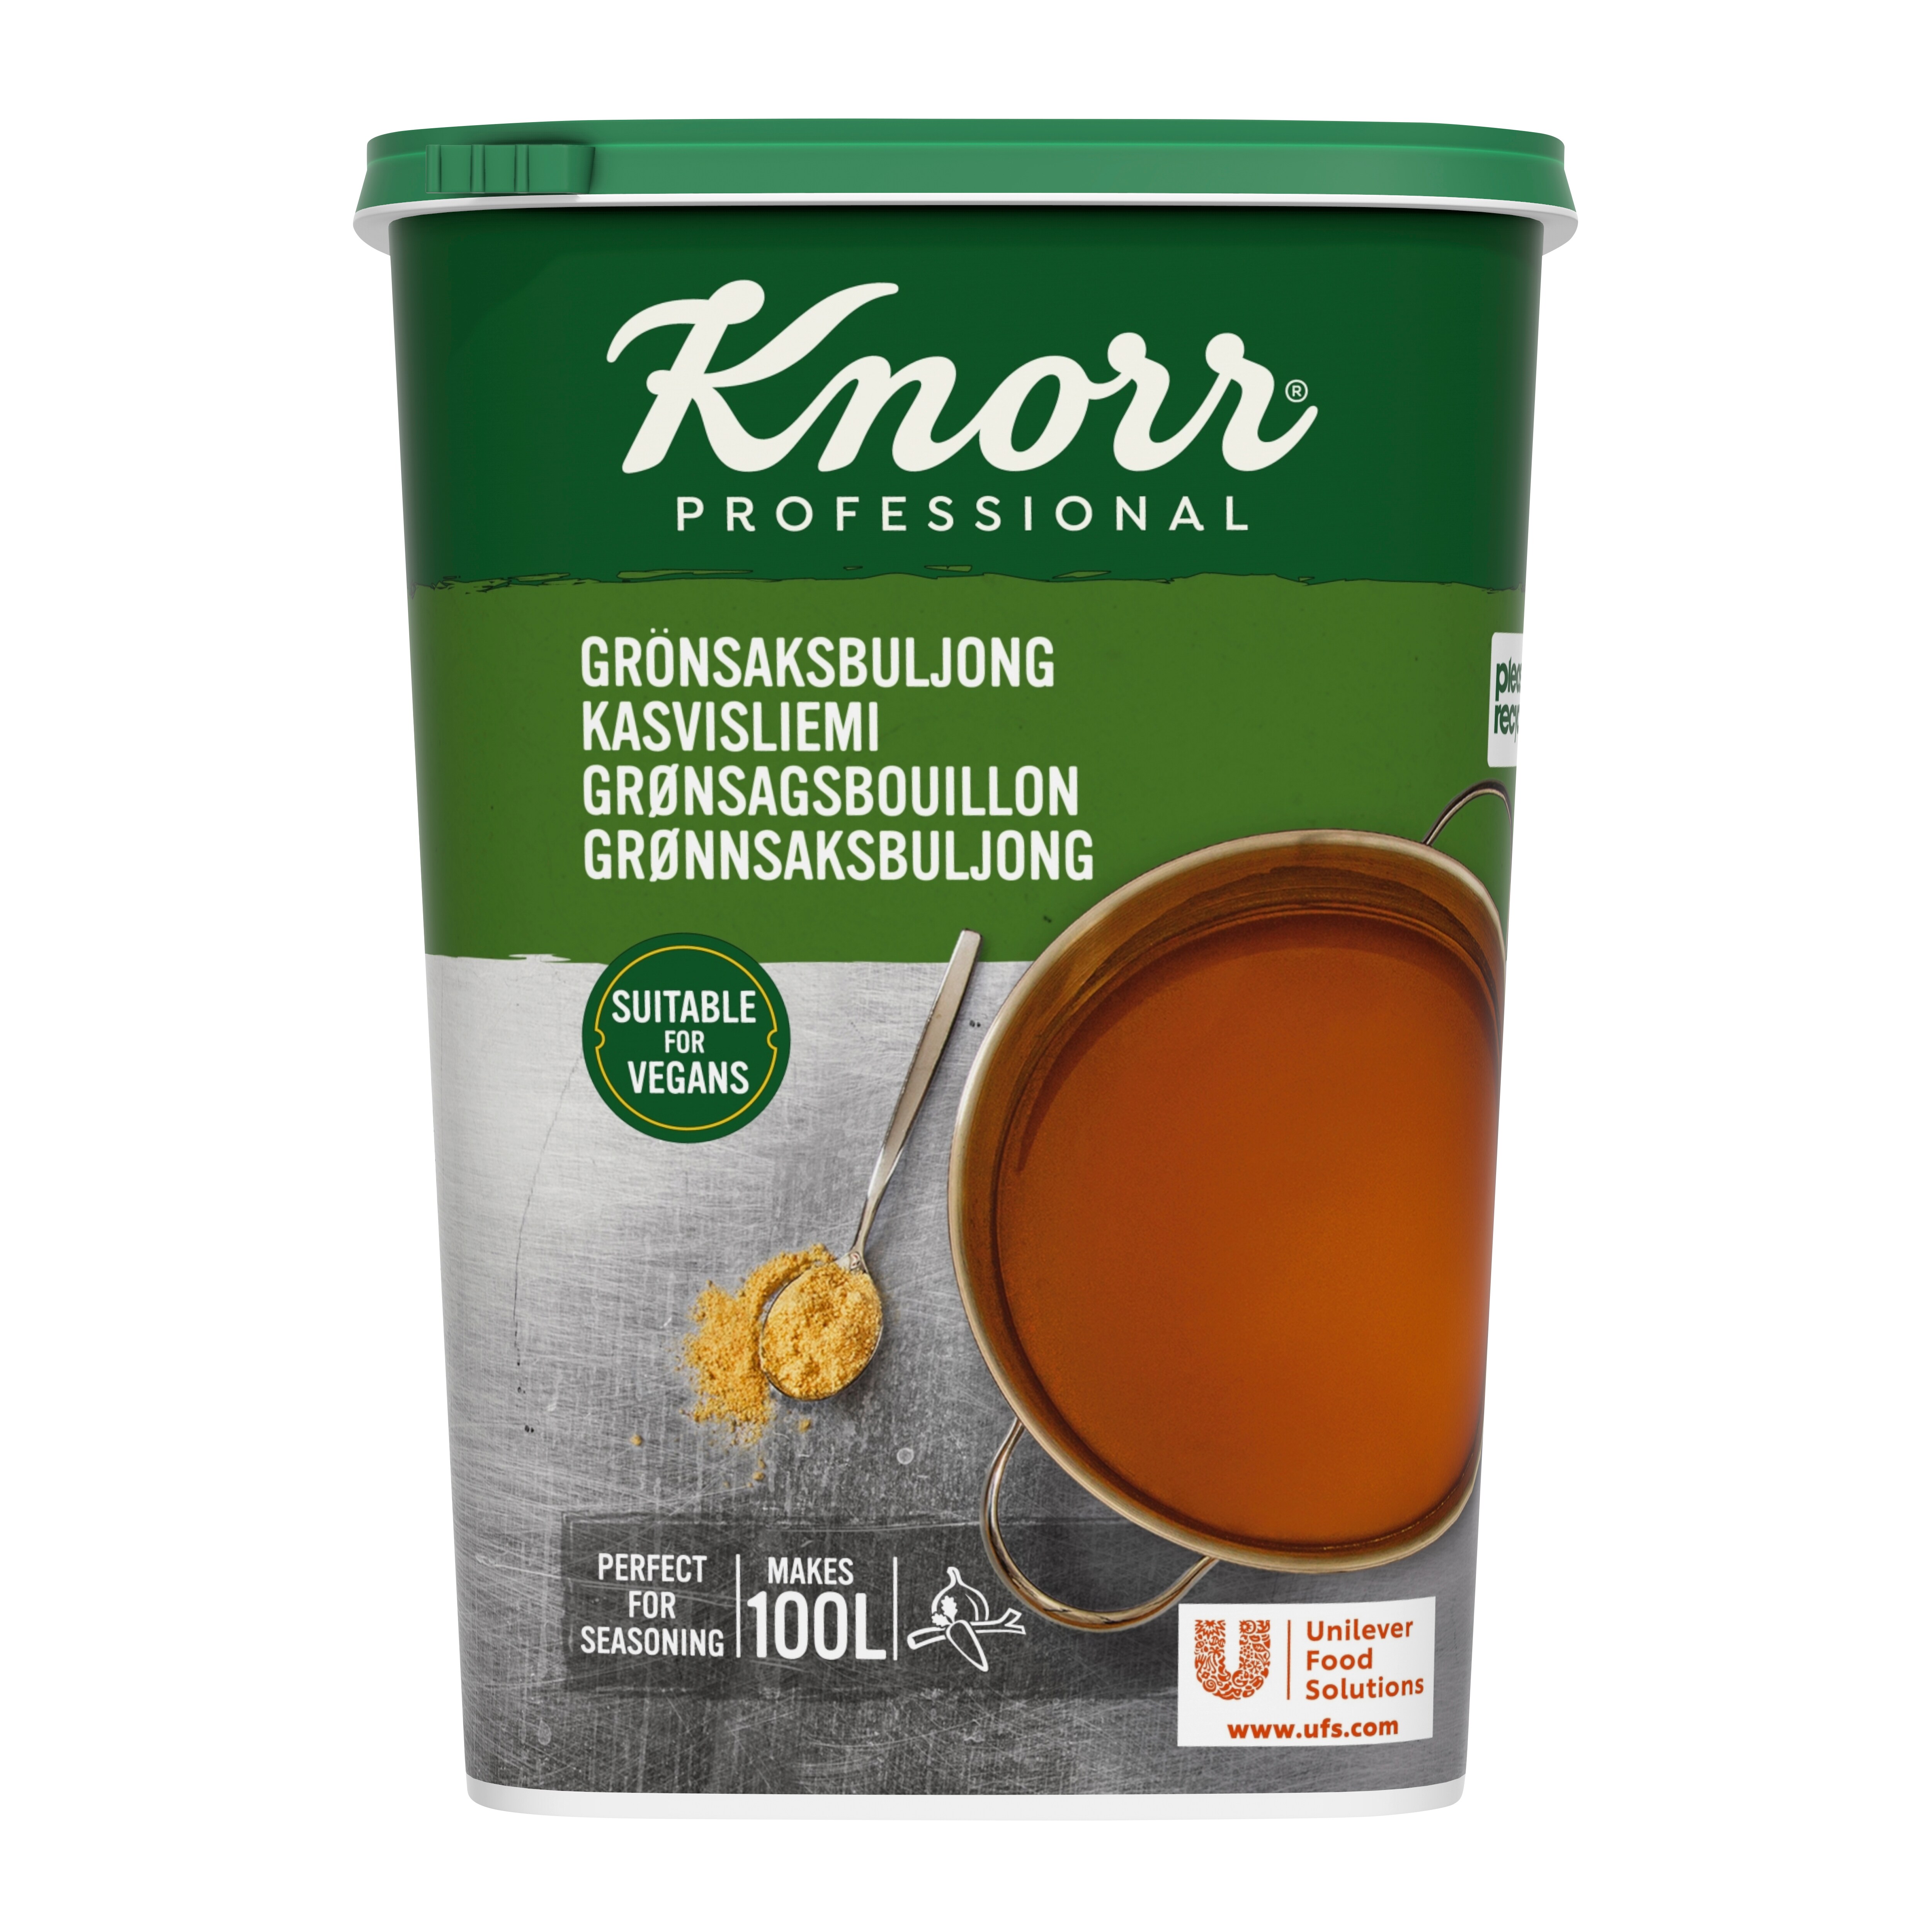 Knorr Grønsagsbouillon, granulat 1,5 kg / 100 l